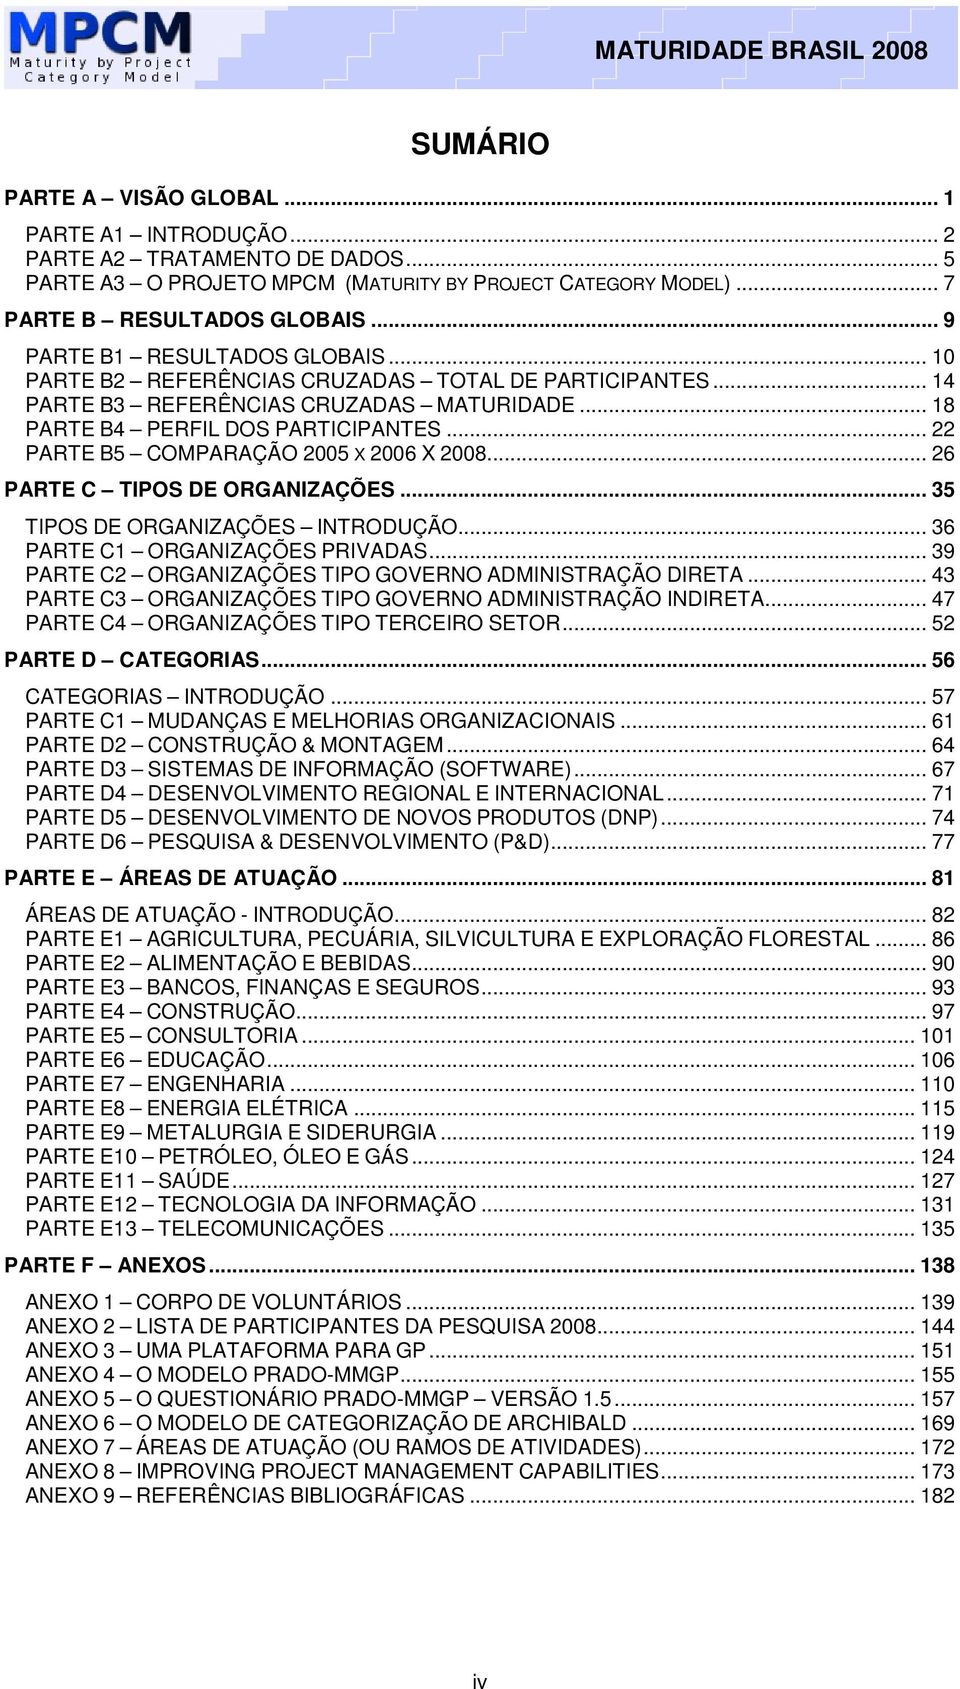 .. 22 PARTE B5 COMPARAÇÃO 2005 X 2006 X 2008... 26 PARTE C TIPOS DE ORGANIZAÇÕES... 35 TIPOS DE ORGANIZAÇÕES INTRODUÇÃO... 36 PARTE C1 ORGANIZAÇÕES PRIVADAS.